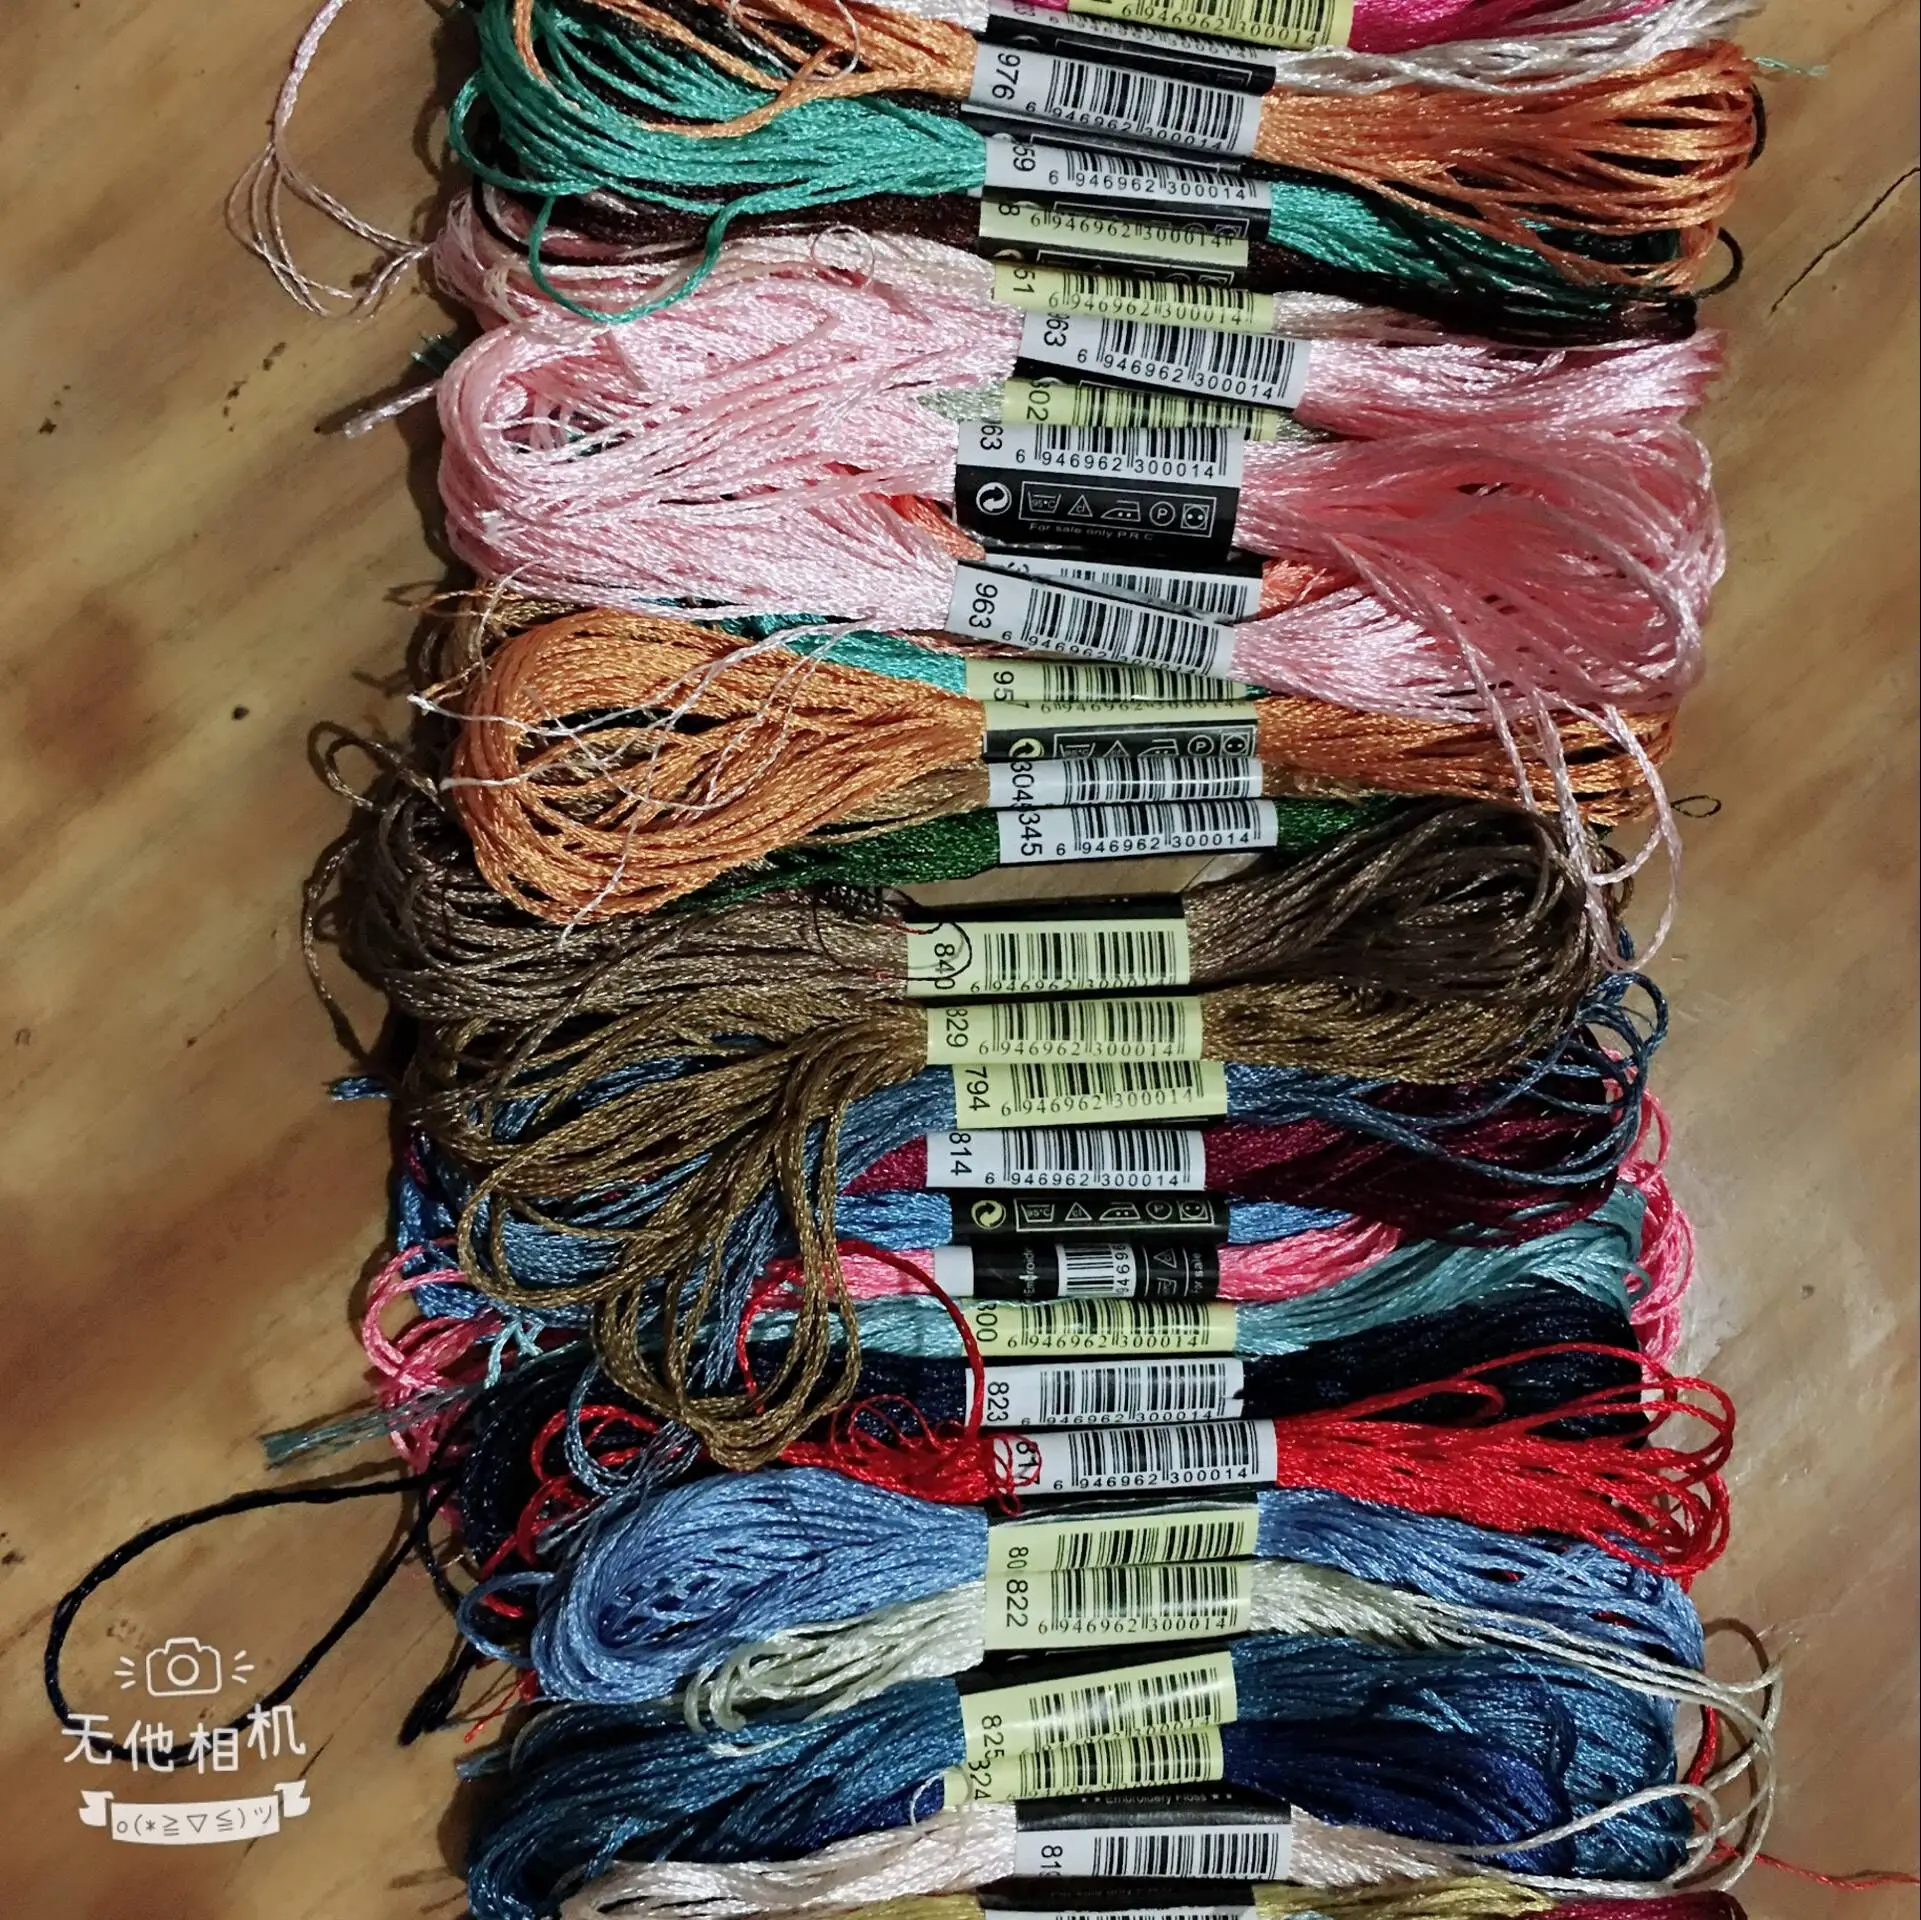 Oneroom 10 нитей-шелковая нить для вышивки/Спиральная вышивка/шелковая линия/ручная вышивка нитей